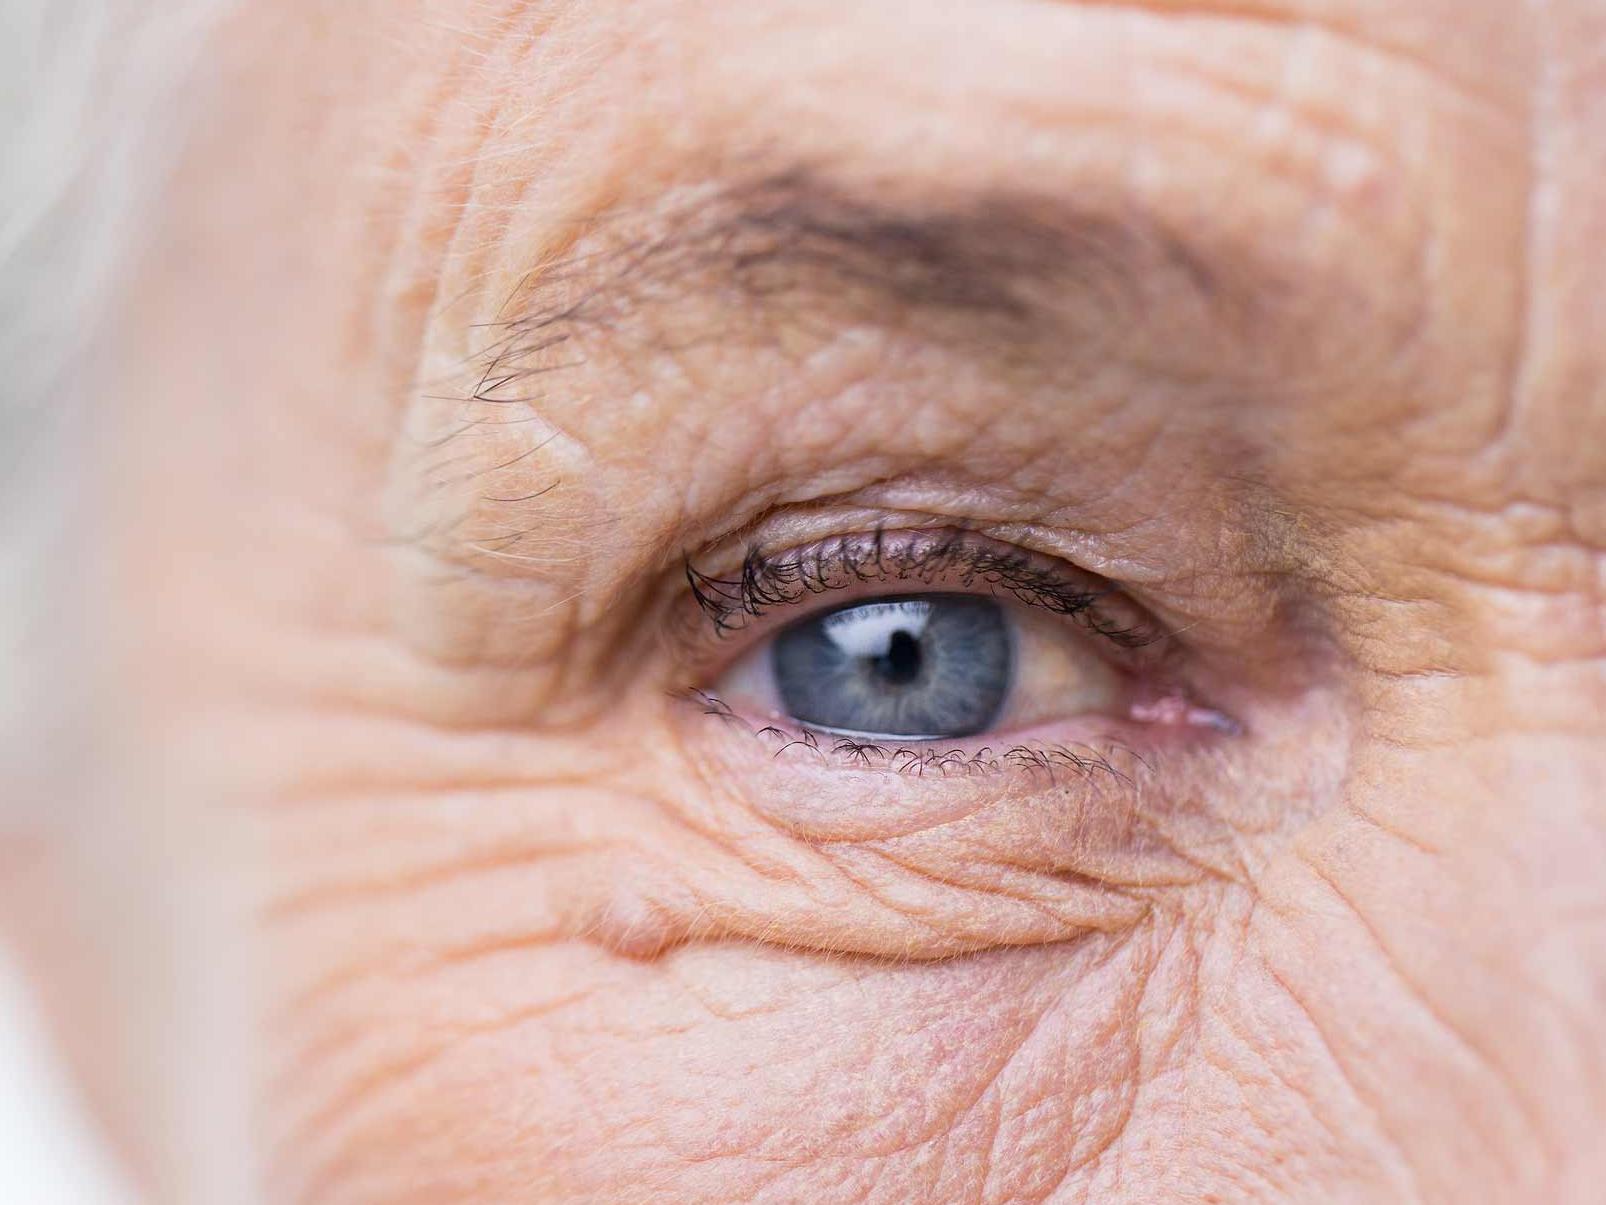 Imaginea prezintă un prim-plan al unui ochi nesănătos, ilustrând potențialele pericole pentru adnexa oculară. 